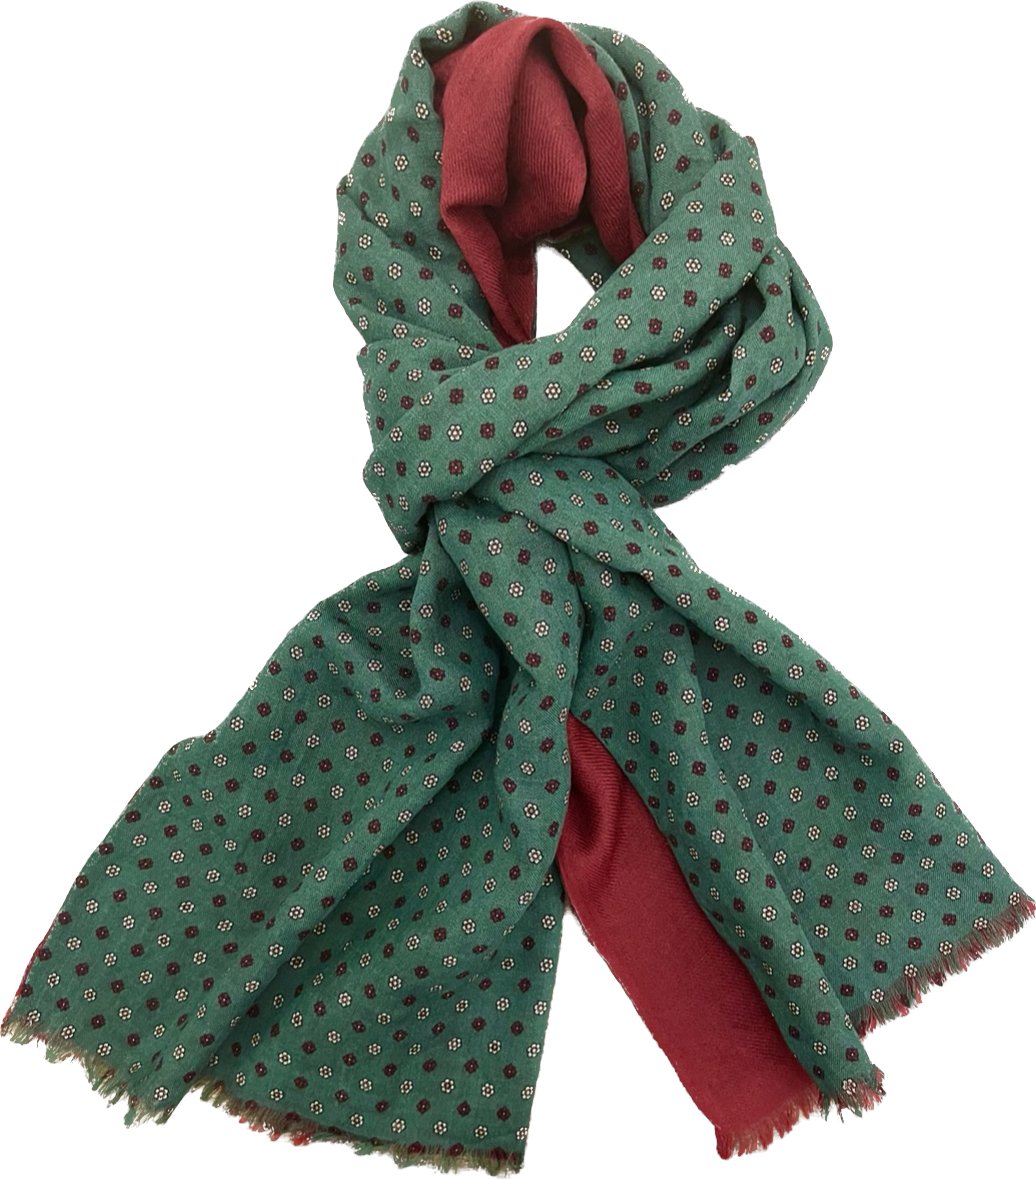 Sciarpa lana doppiata fantasia cravatta verde bordeaux Franco Bassi - MONSIEUR